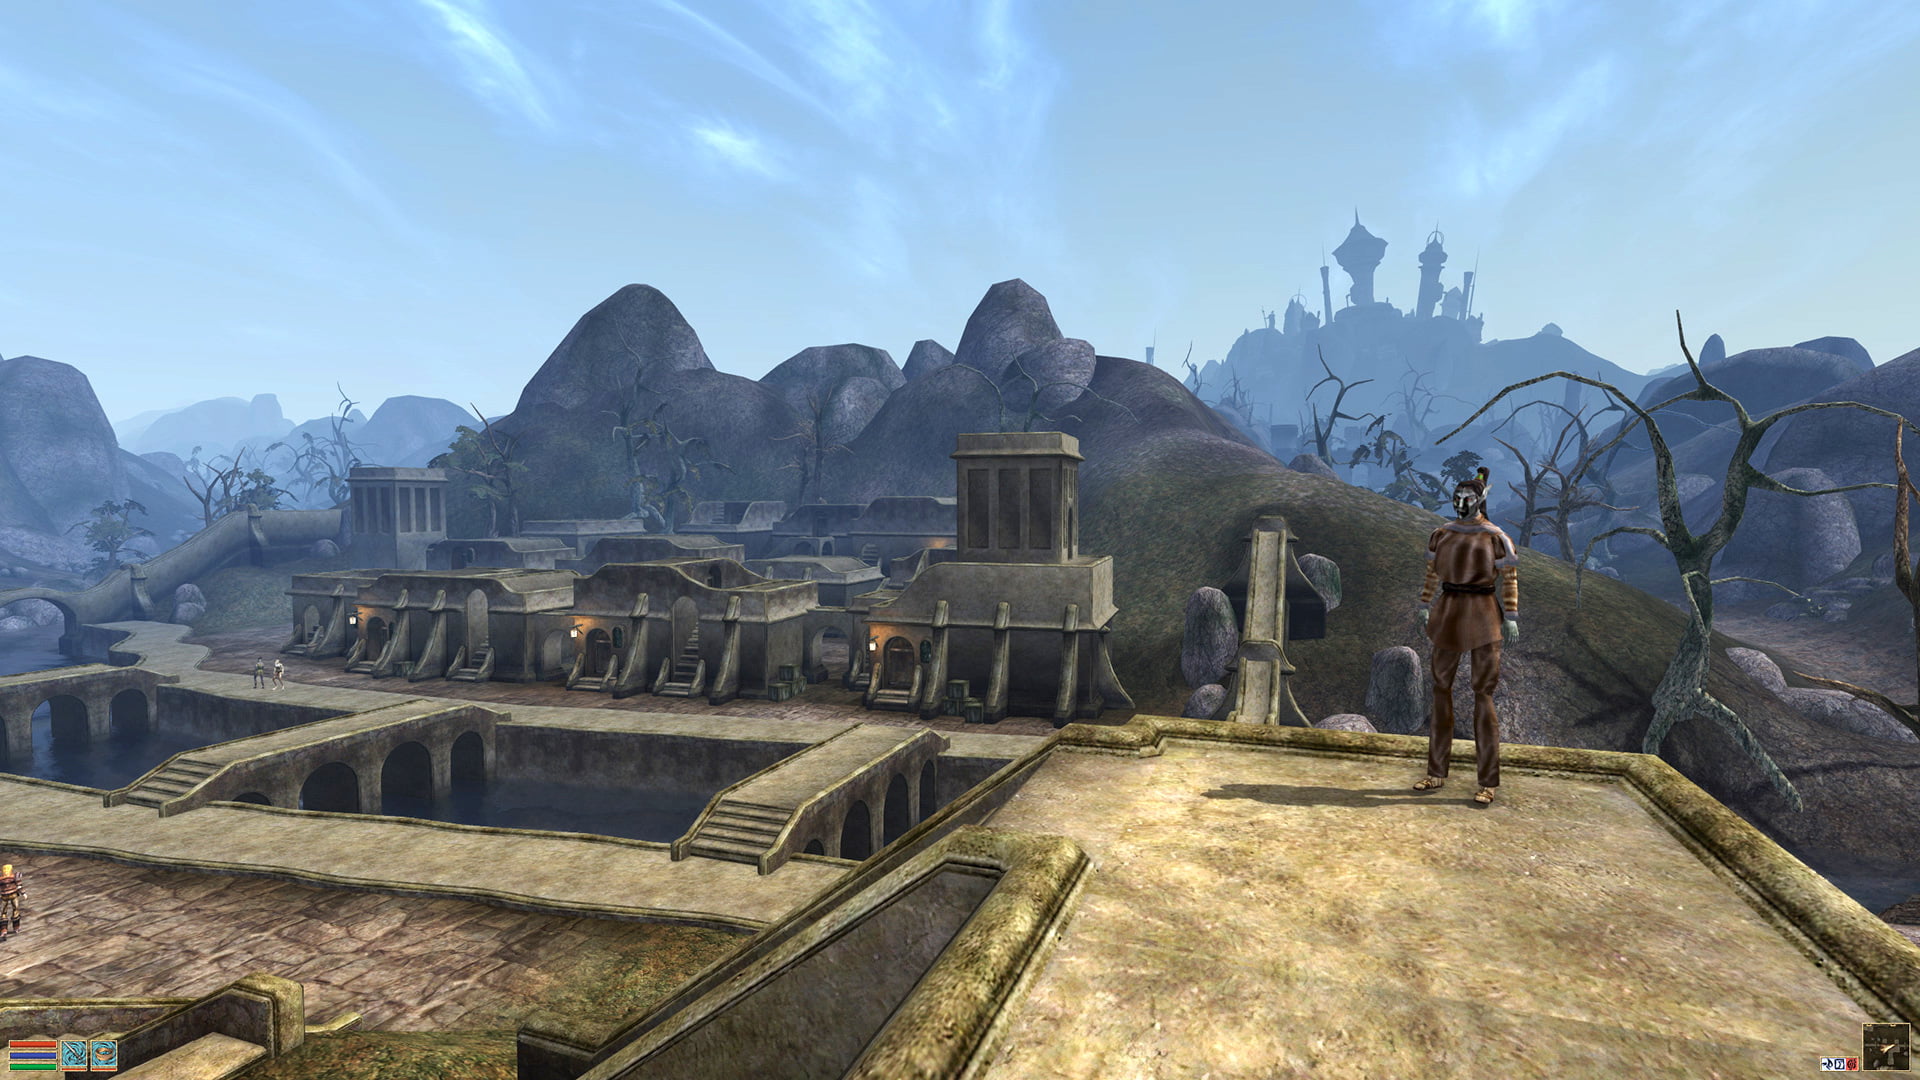 Сódigos de trapaça e comandos para o jogo Morrowind no PC